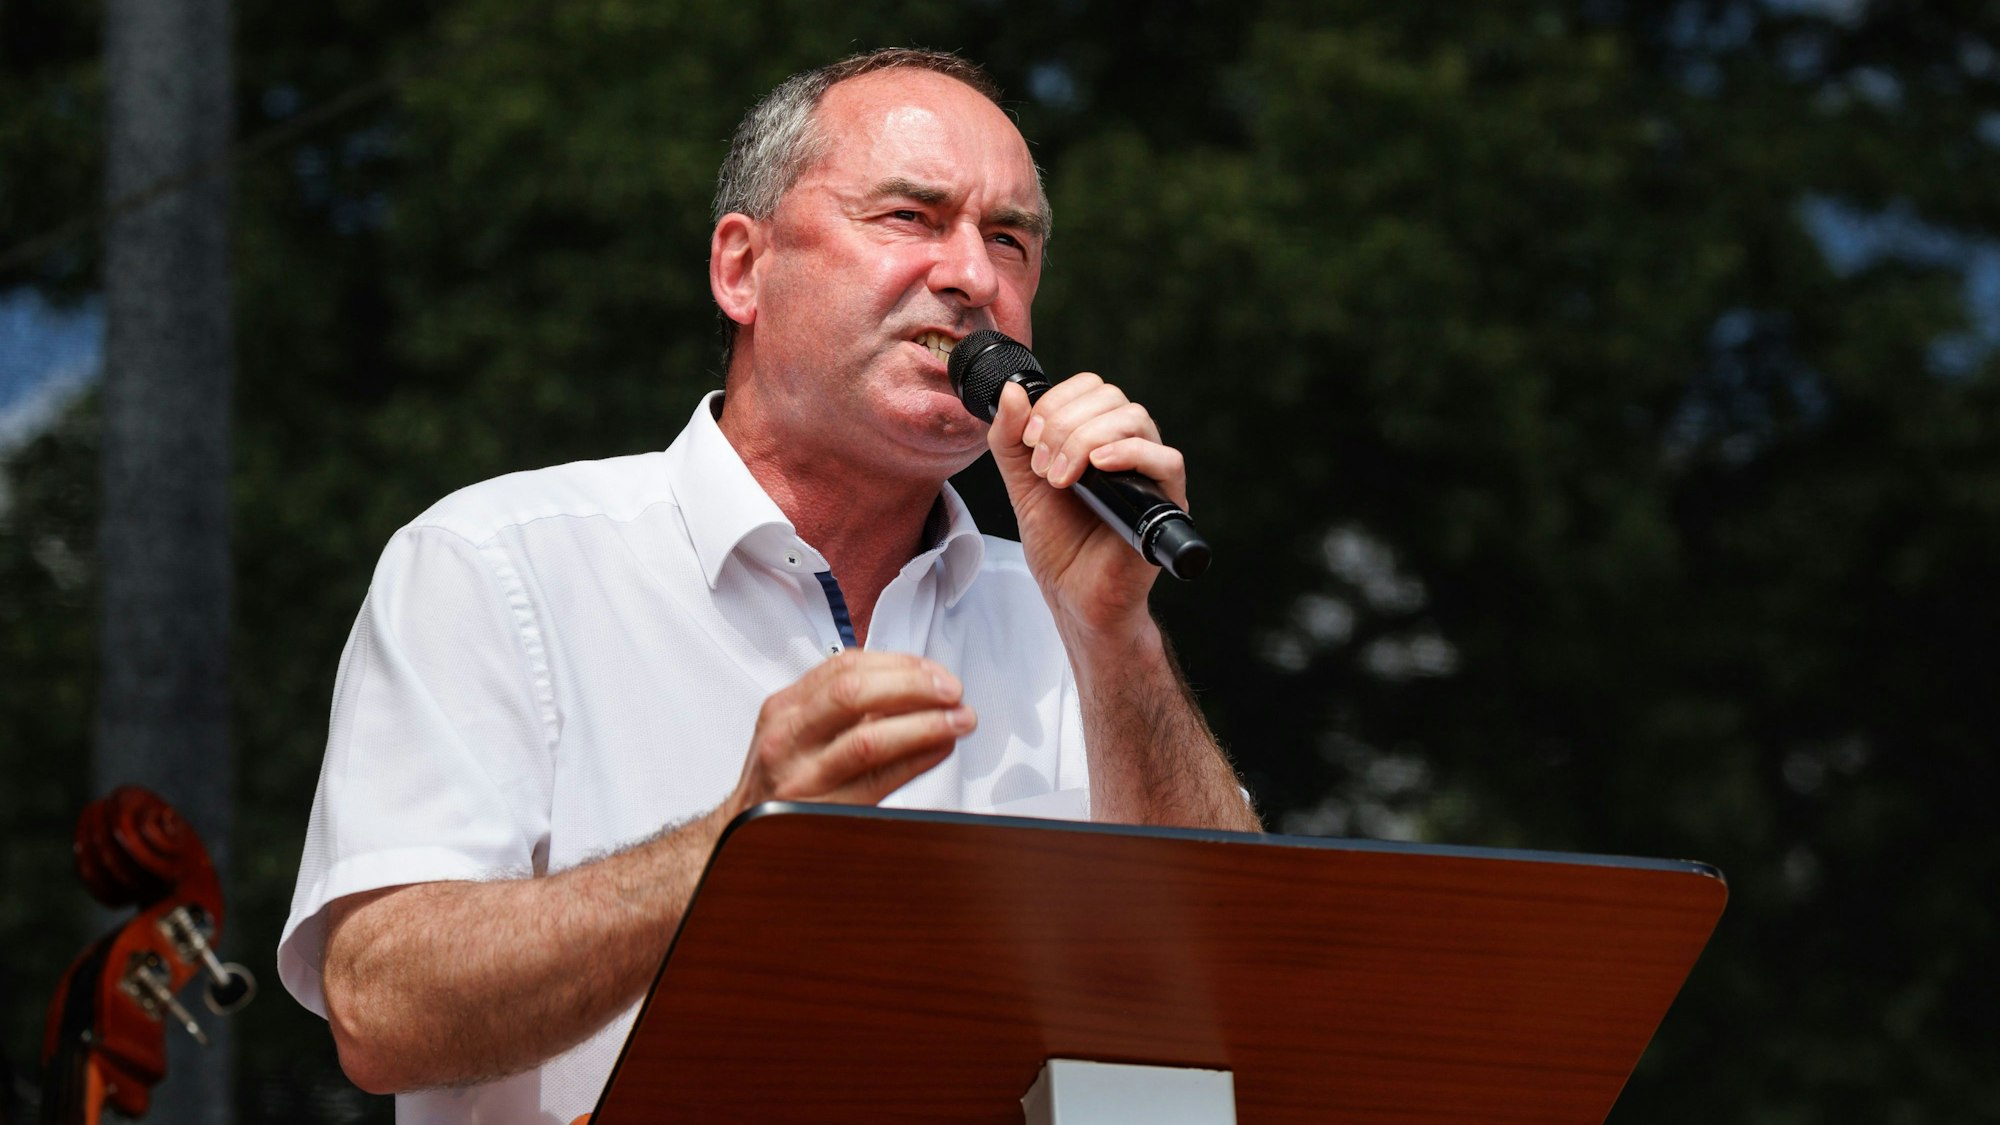 Hubert Aiwanger, Wirtschaftsminister und Landesvorsitzender der Freien Wähler in Bayern, spricht bei der Demonstration in Erding Mitte Juni gegen die Politiker der Grünen.